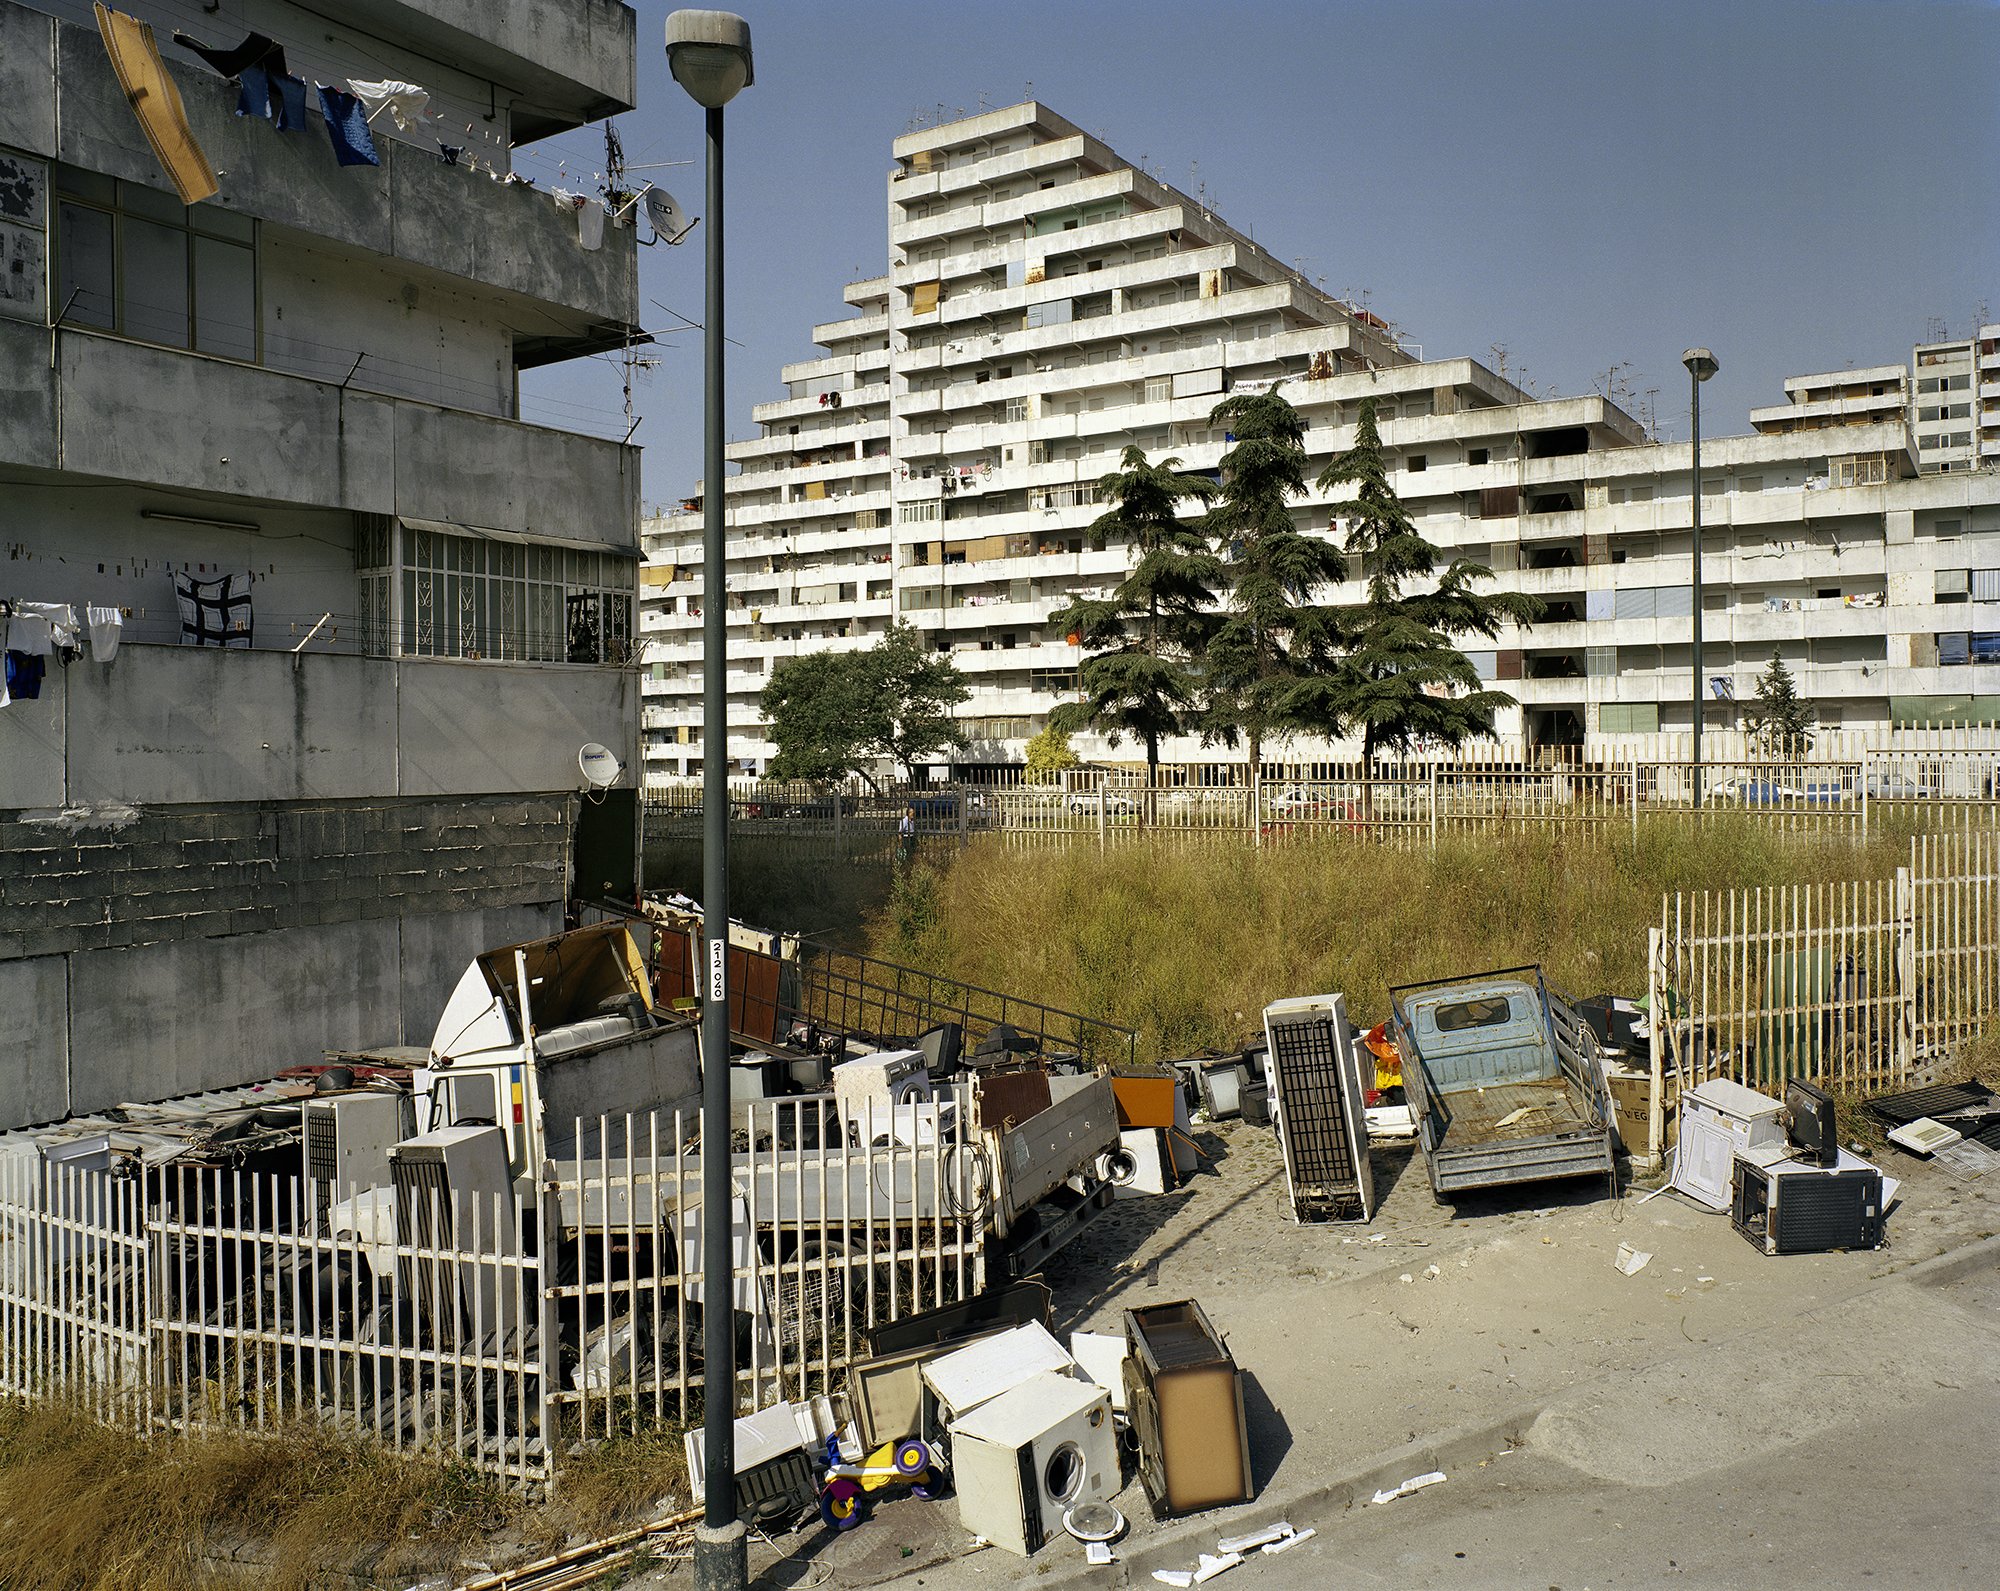  Le Vele, Naples. 2003. 